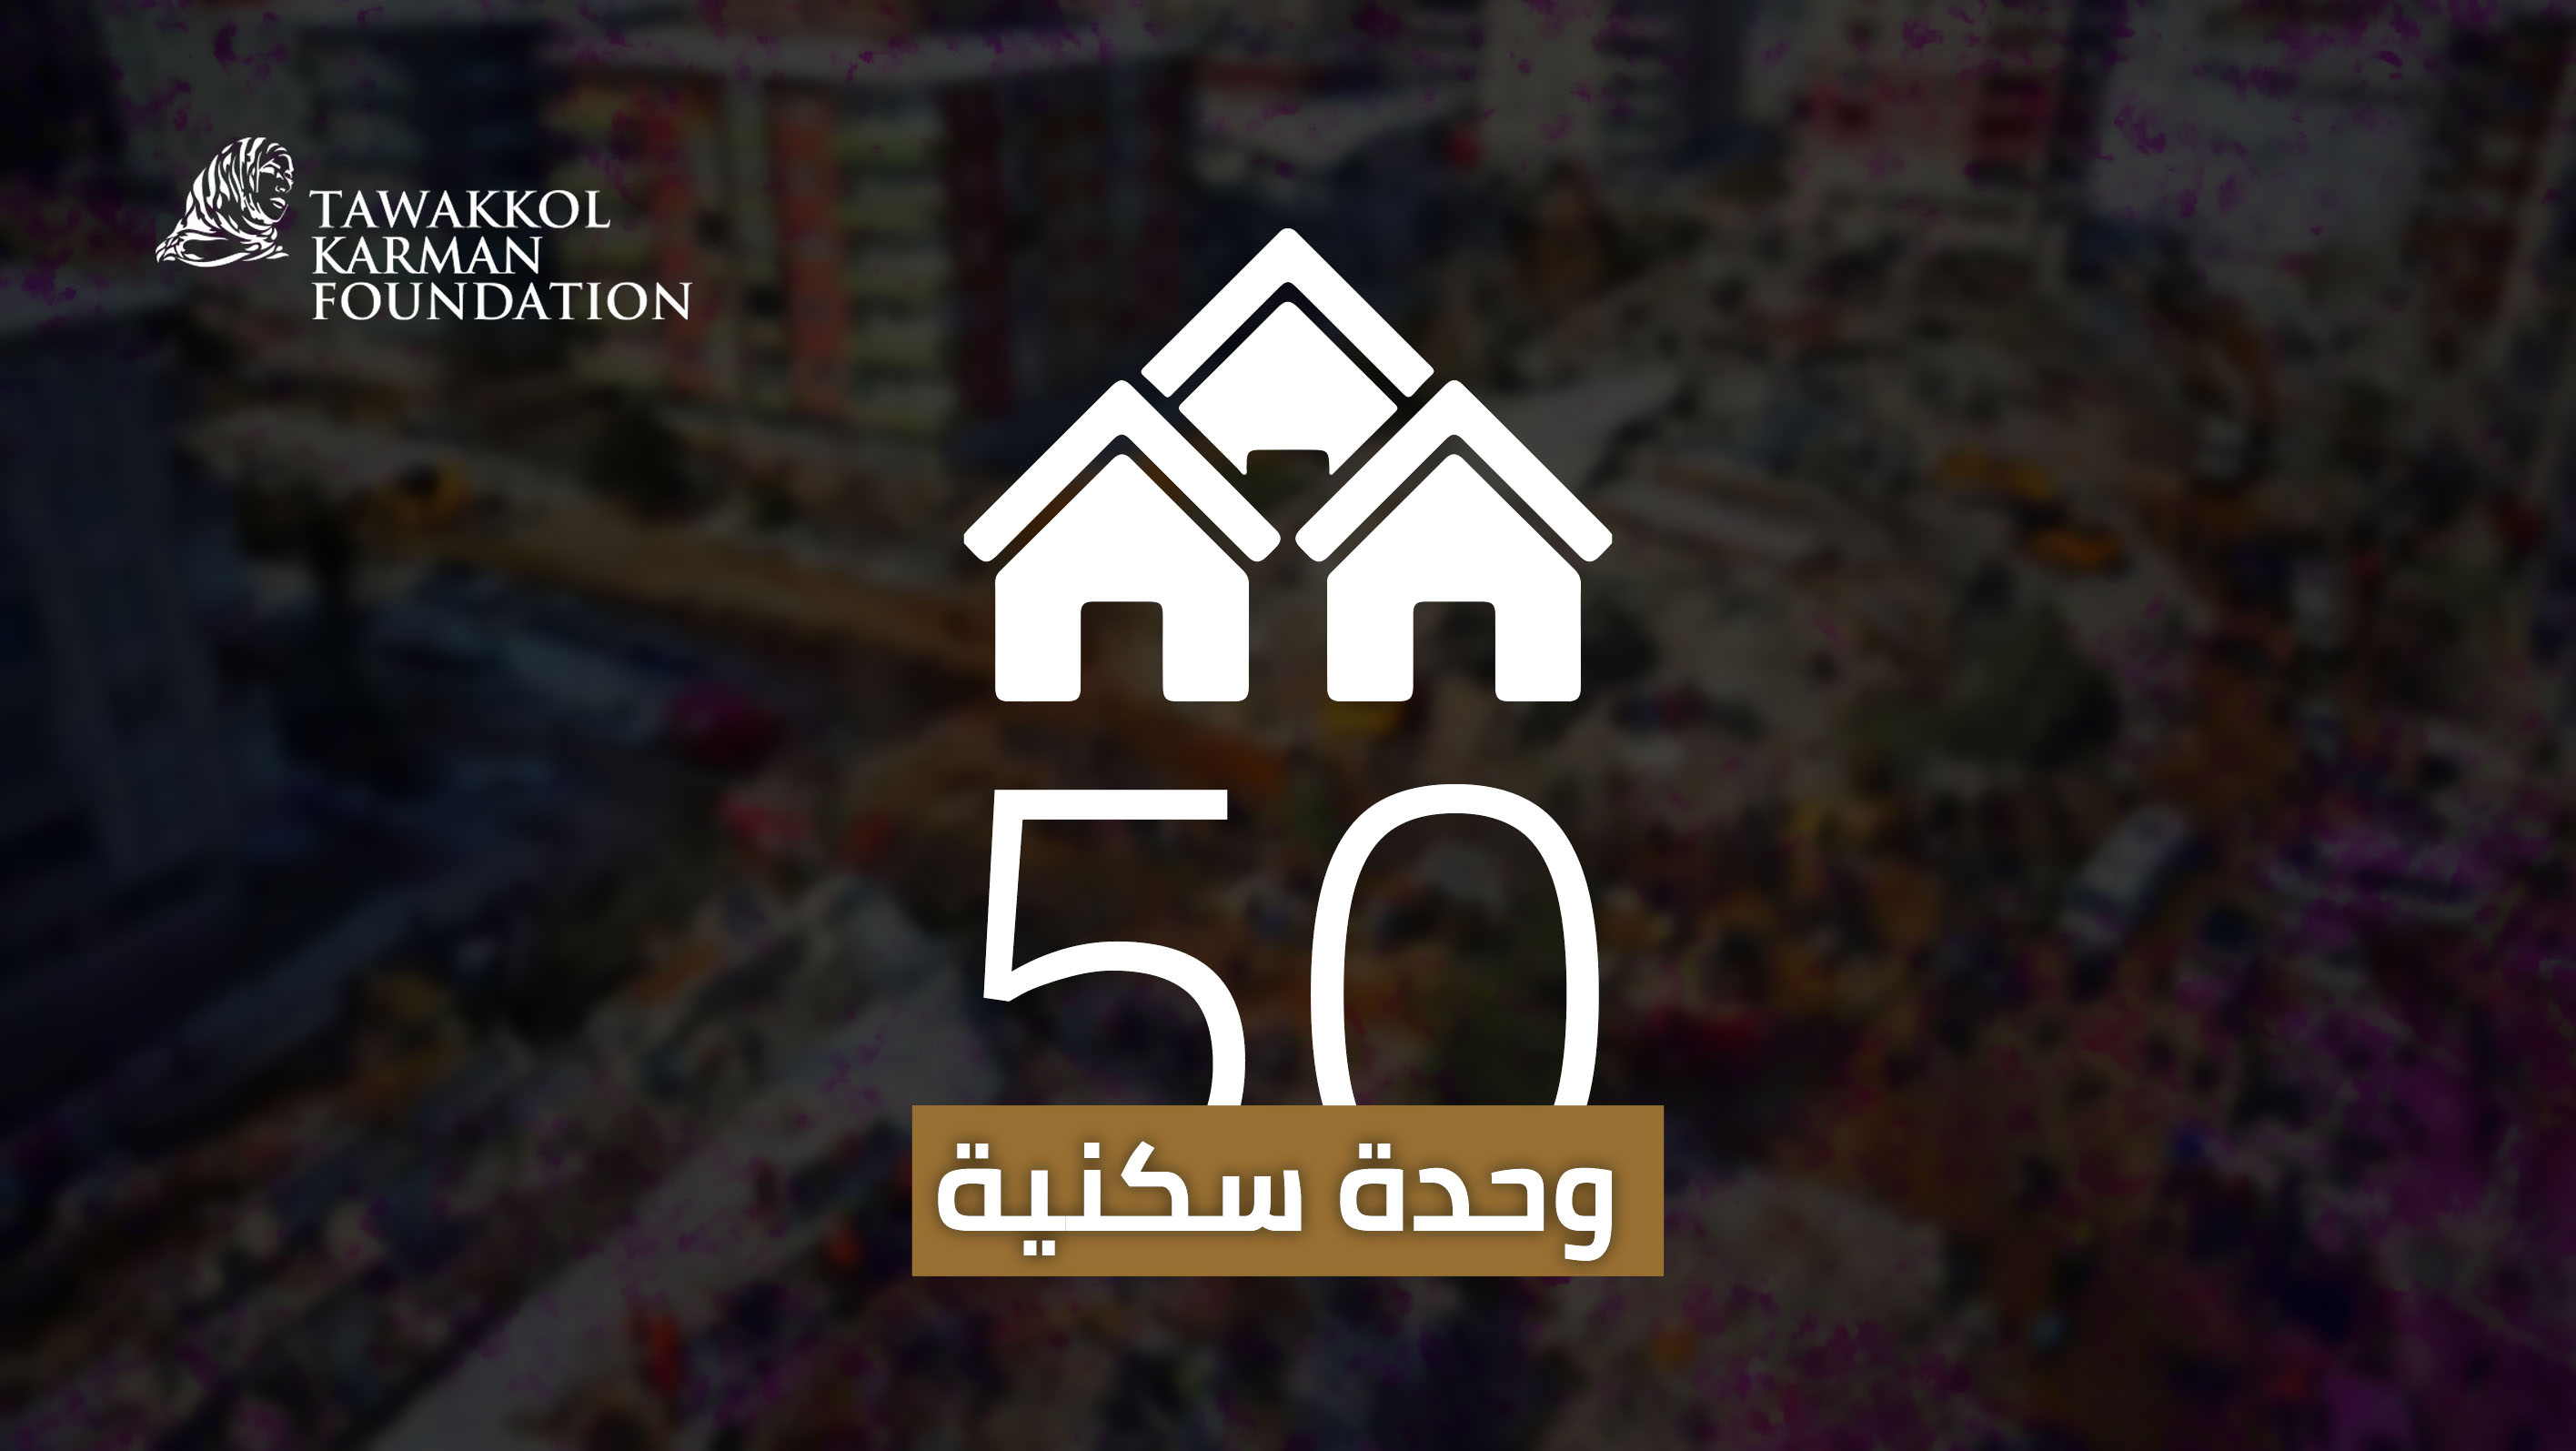 مؤسسة توكل كرمان تتبرع ببناء 50 وحدة سكنية لمن فقدوا منازلهم في تركيا وتسير قافلتين إغاثيتين إحداهما إلى سوريا